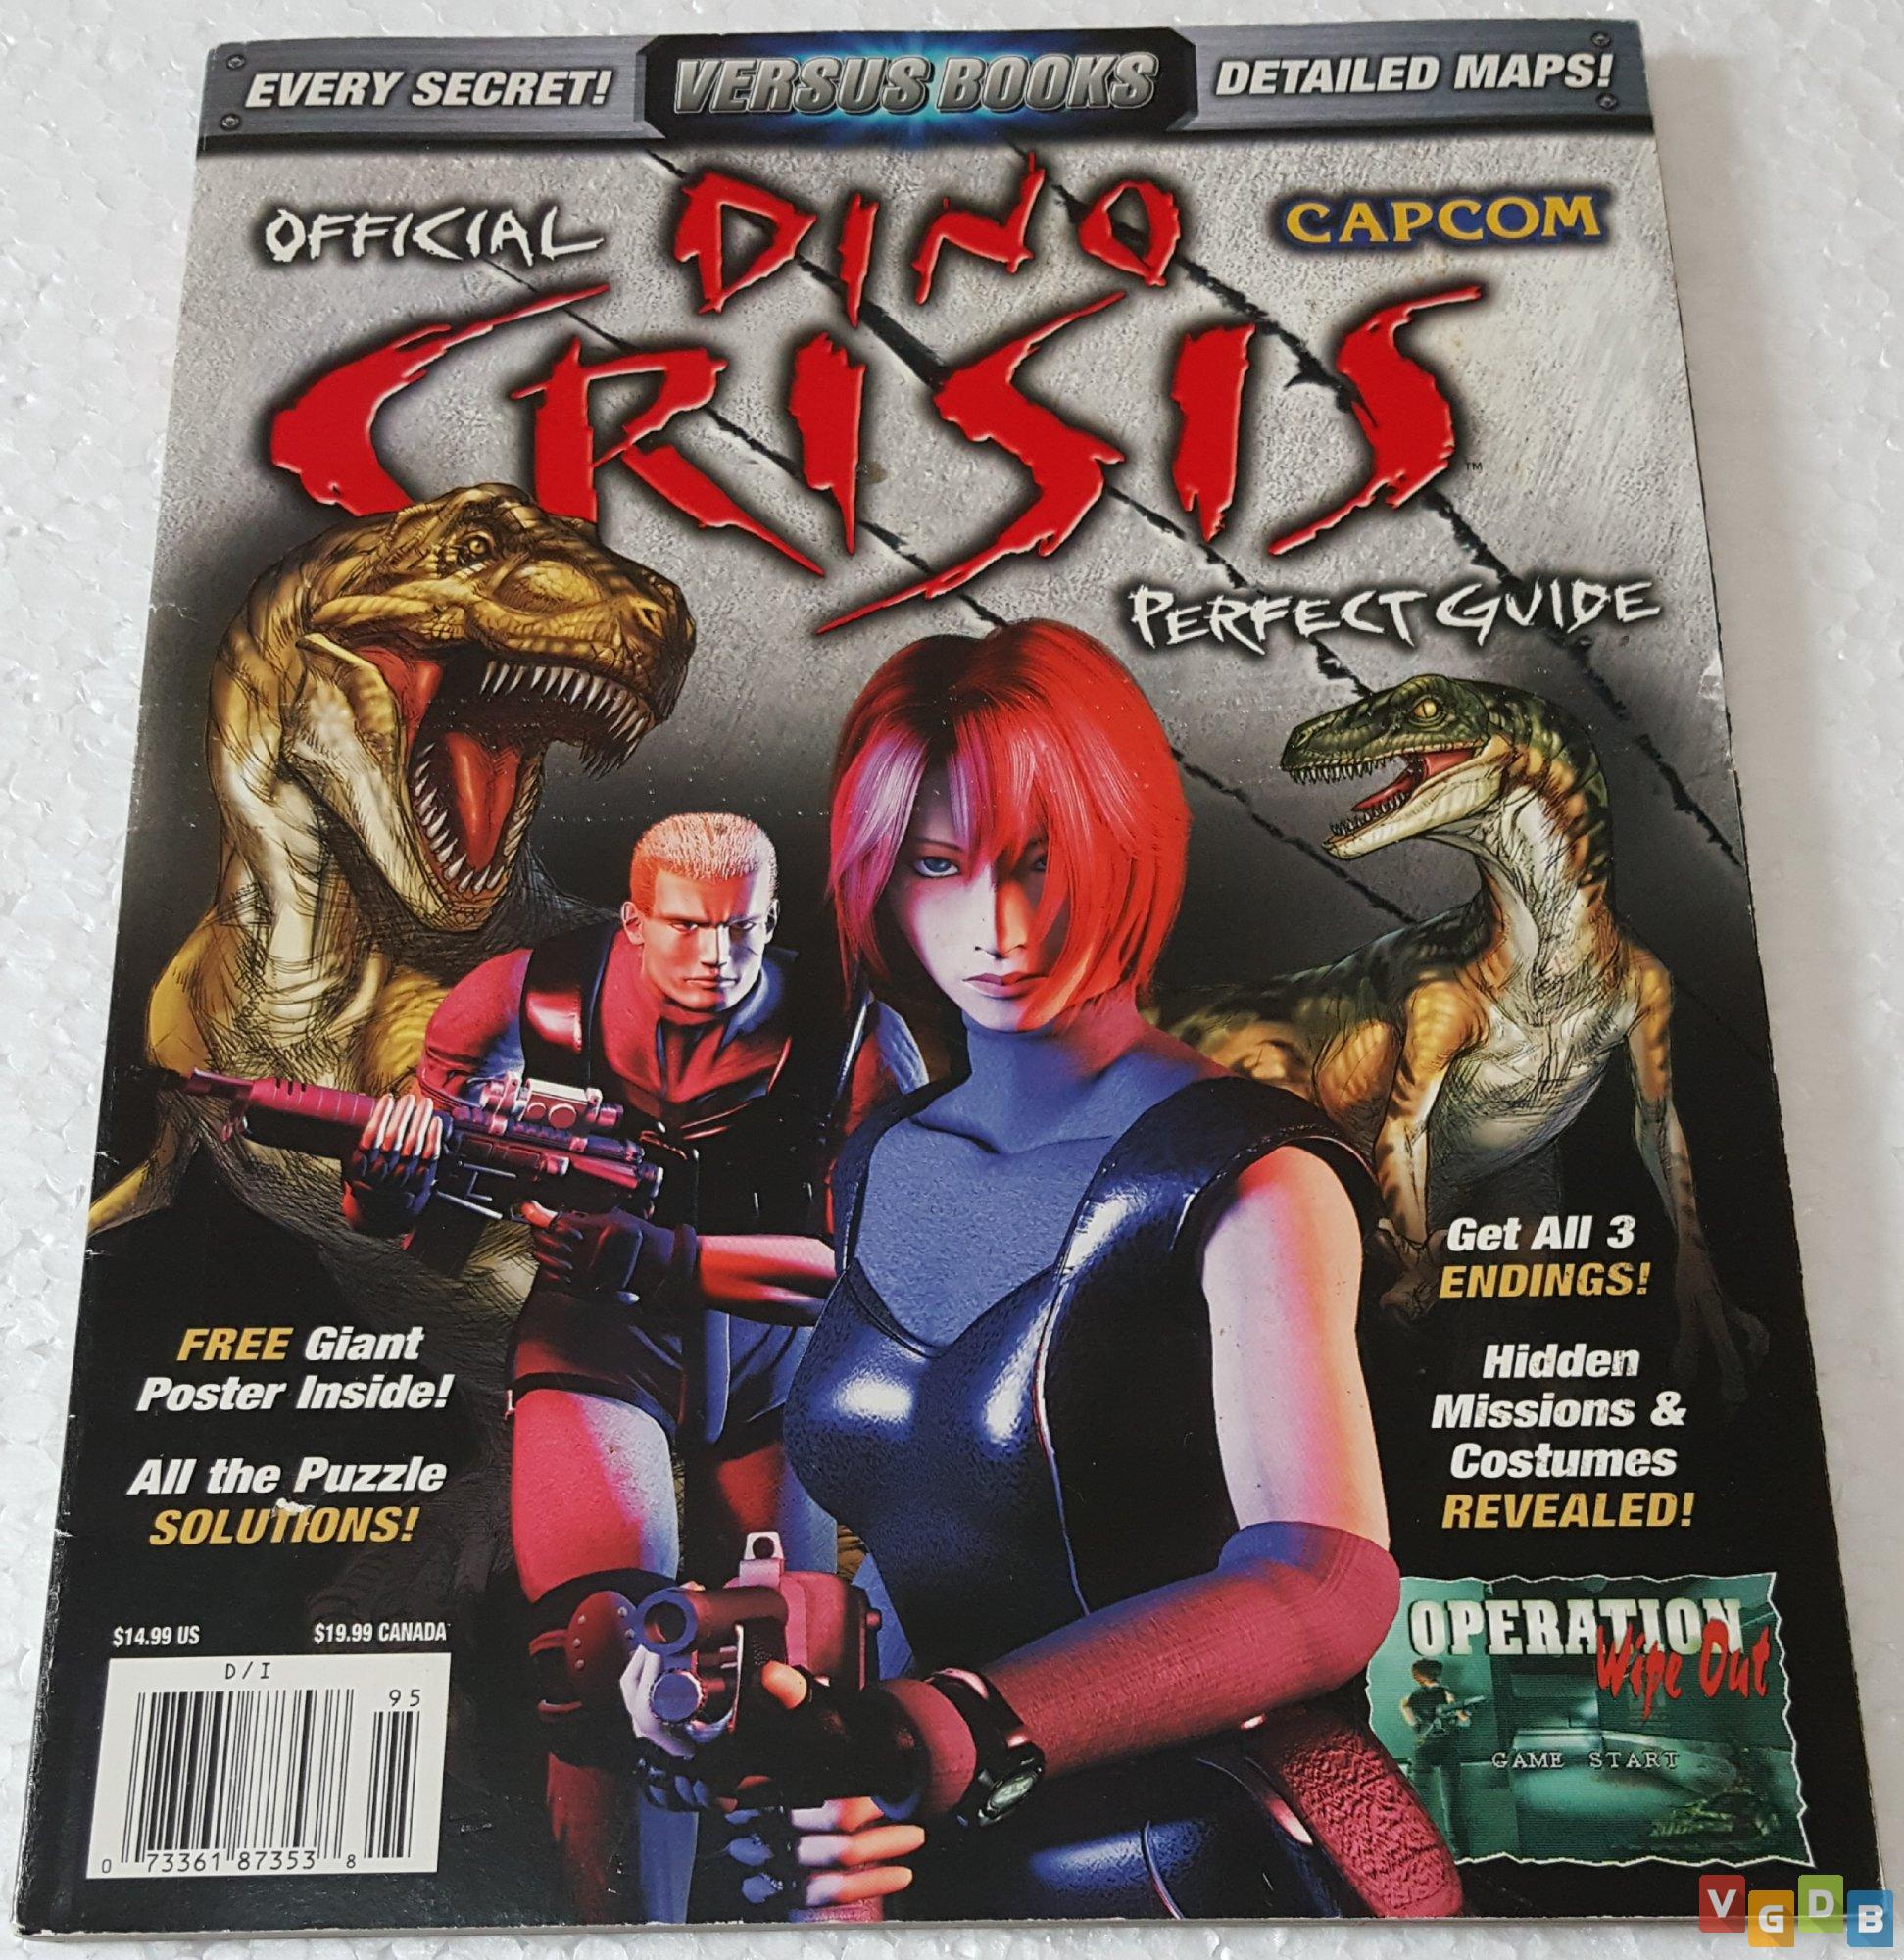 EvilHazard  Resident Evil & Survival Horror on X: Seria Dino Crisis 2 o  seu DC preferido? Relembre conosco detalhes e curiosidades sobre o jogo no  link a seguir:  #DinoCrisis2   /